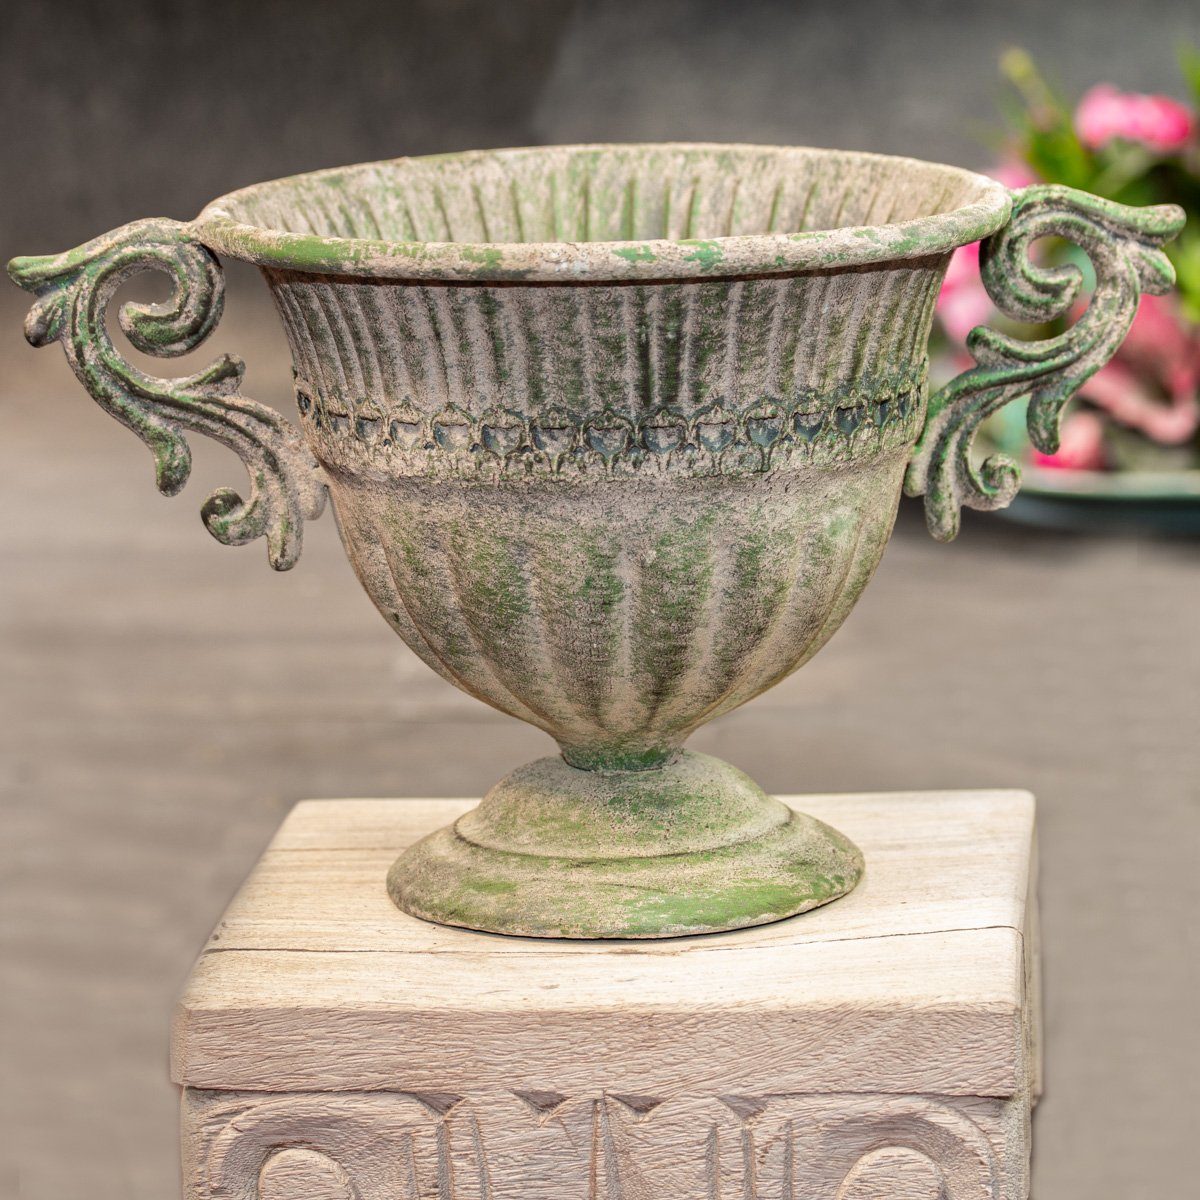 Antikas Blumentopf Französische Vase aus Eisen, Rund, Shabby Look, Blumenvase